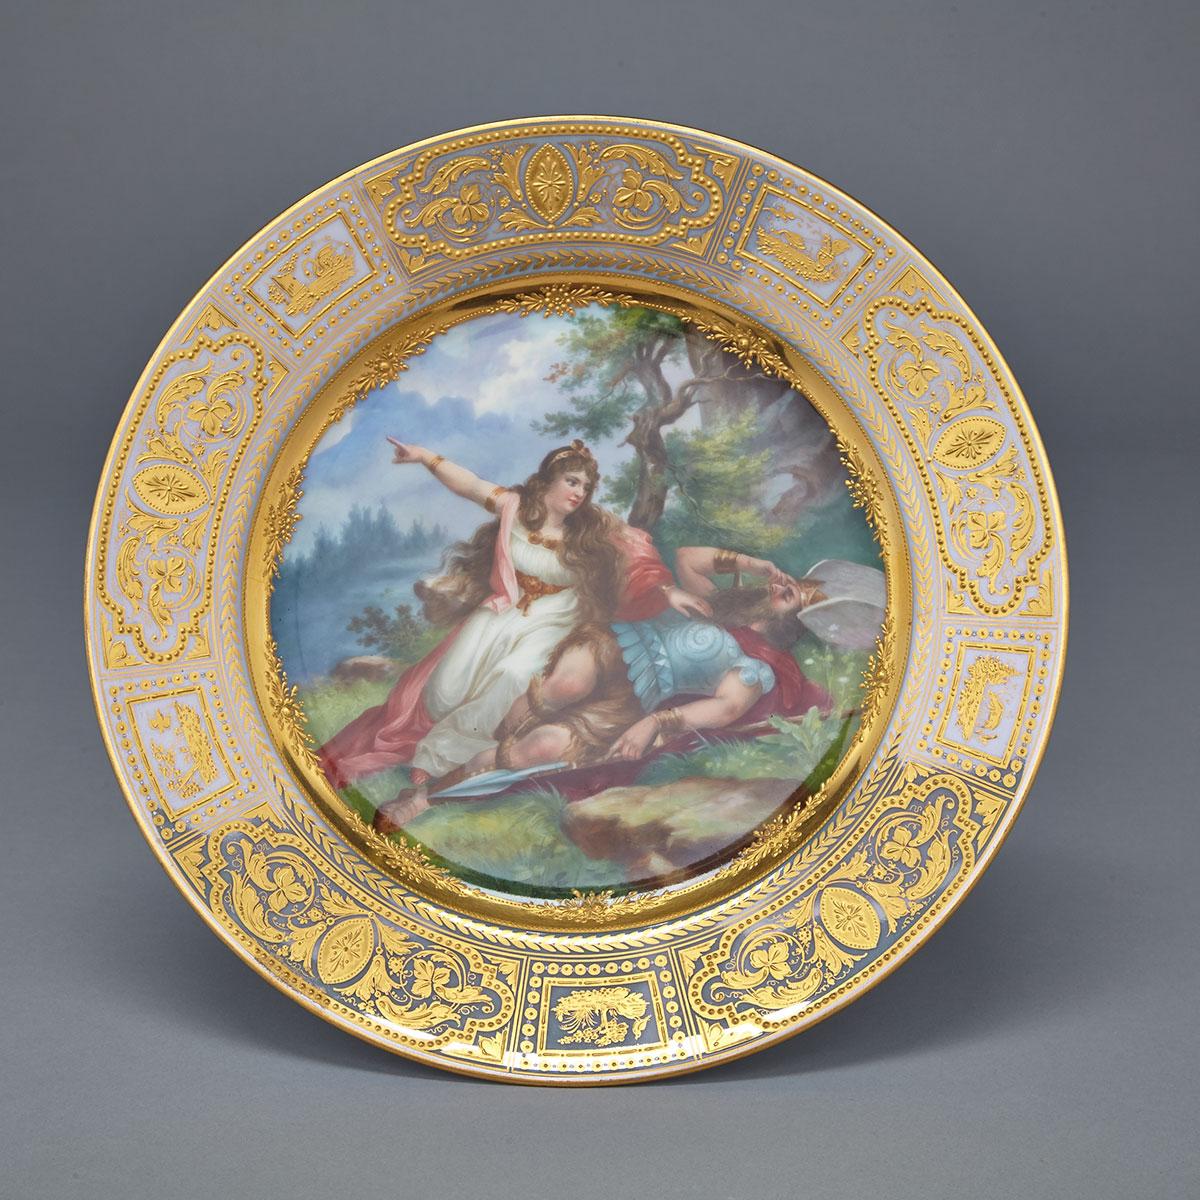 ‘Vienna’ Cabinet Plate, ‘Death of Siegmund’, early 20th century